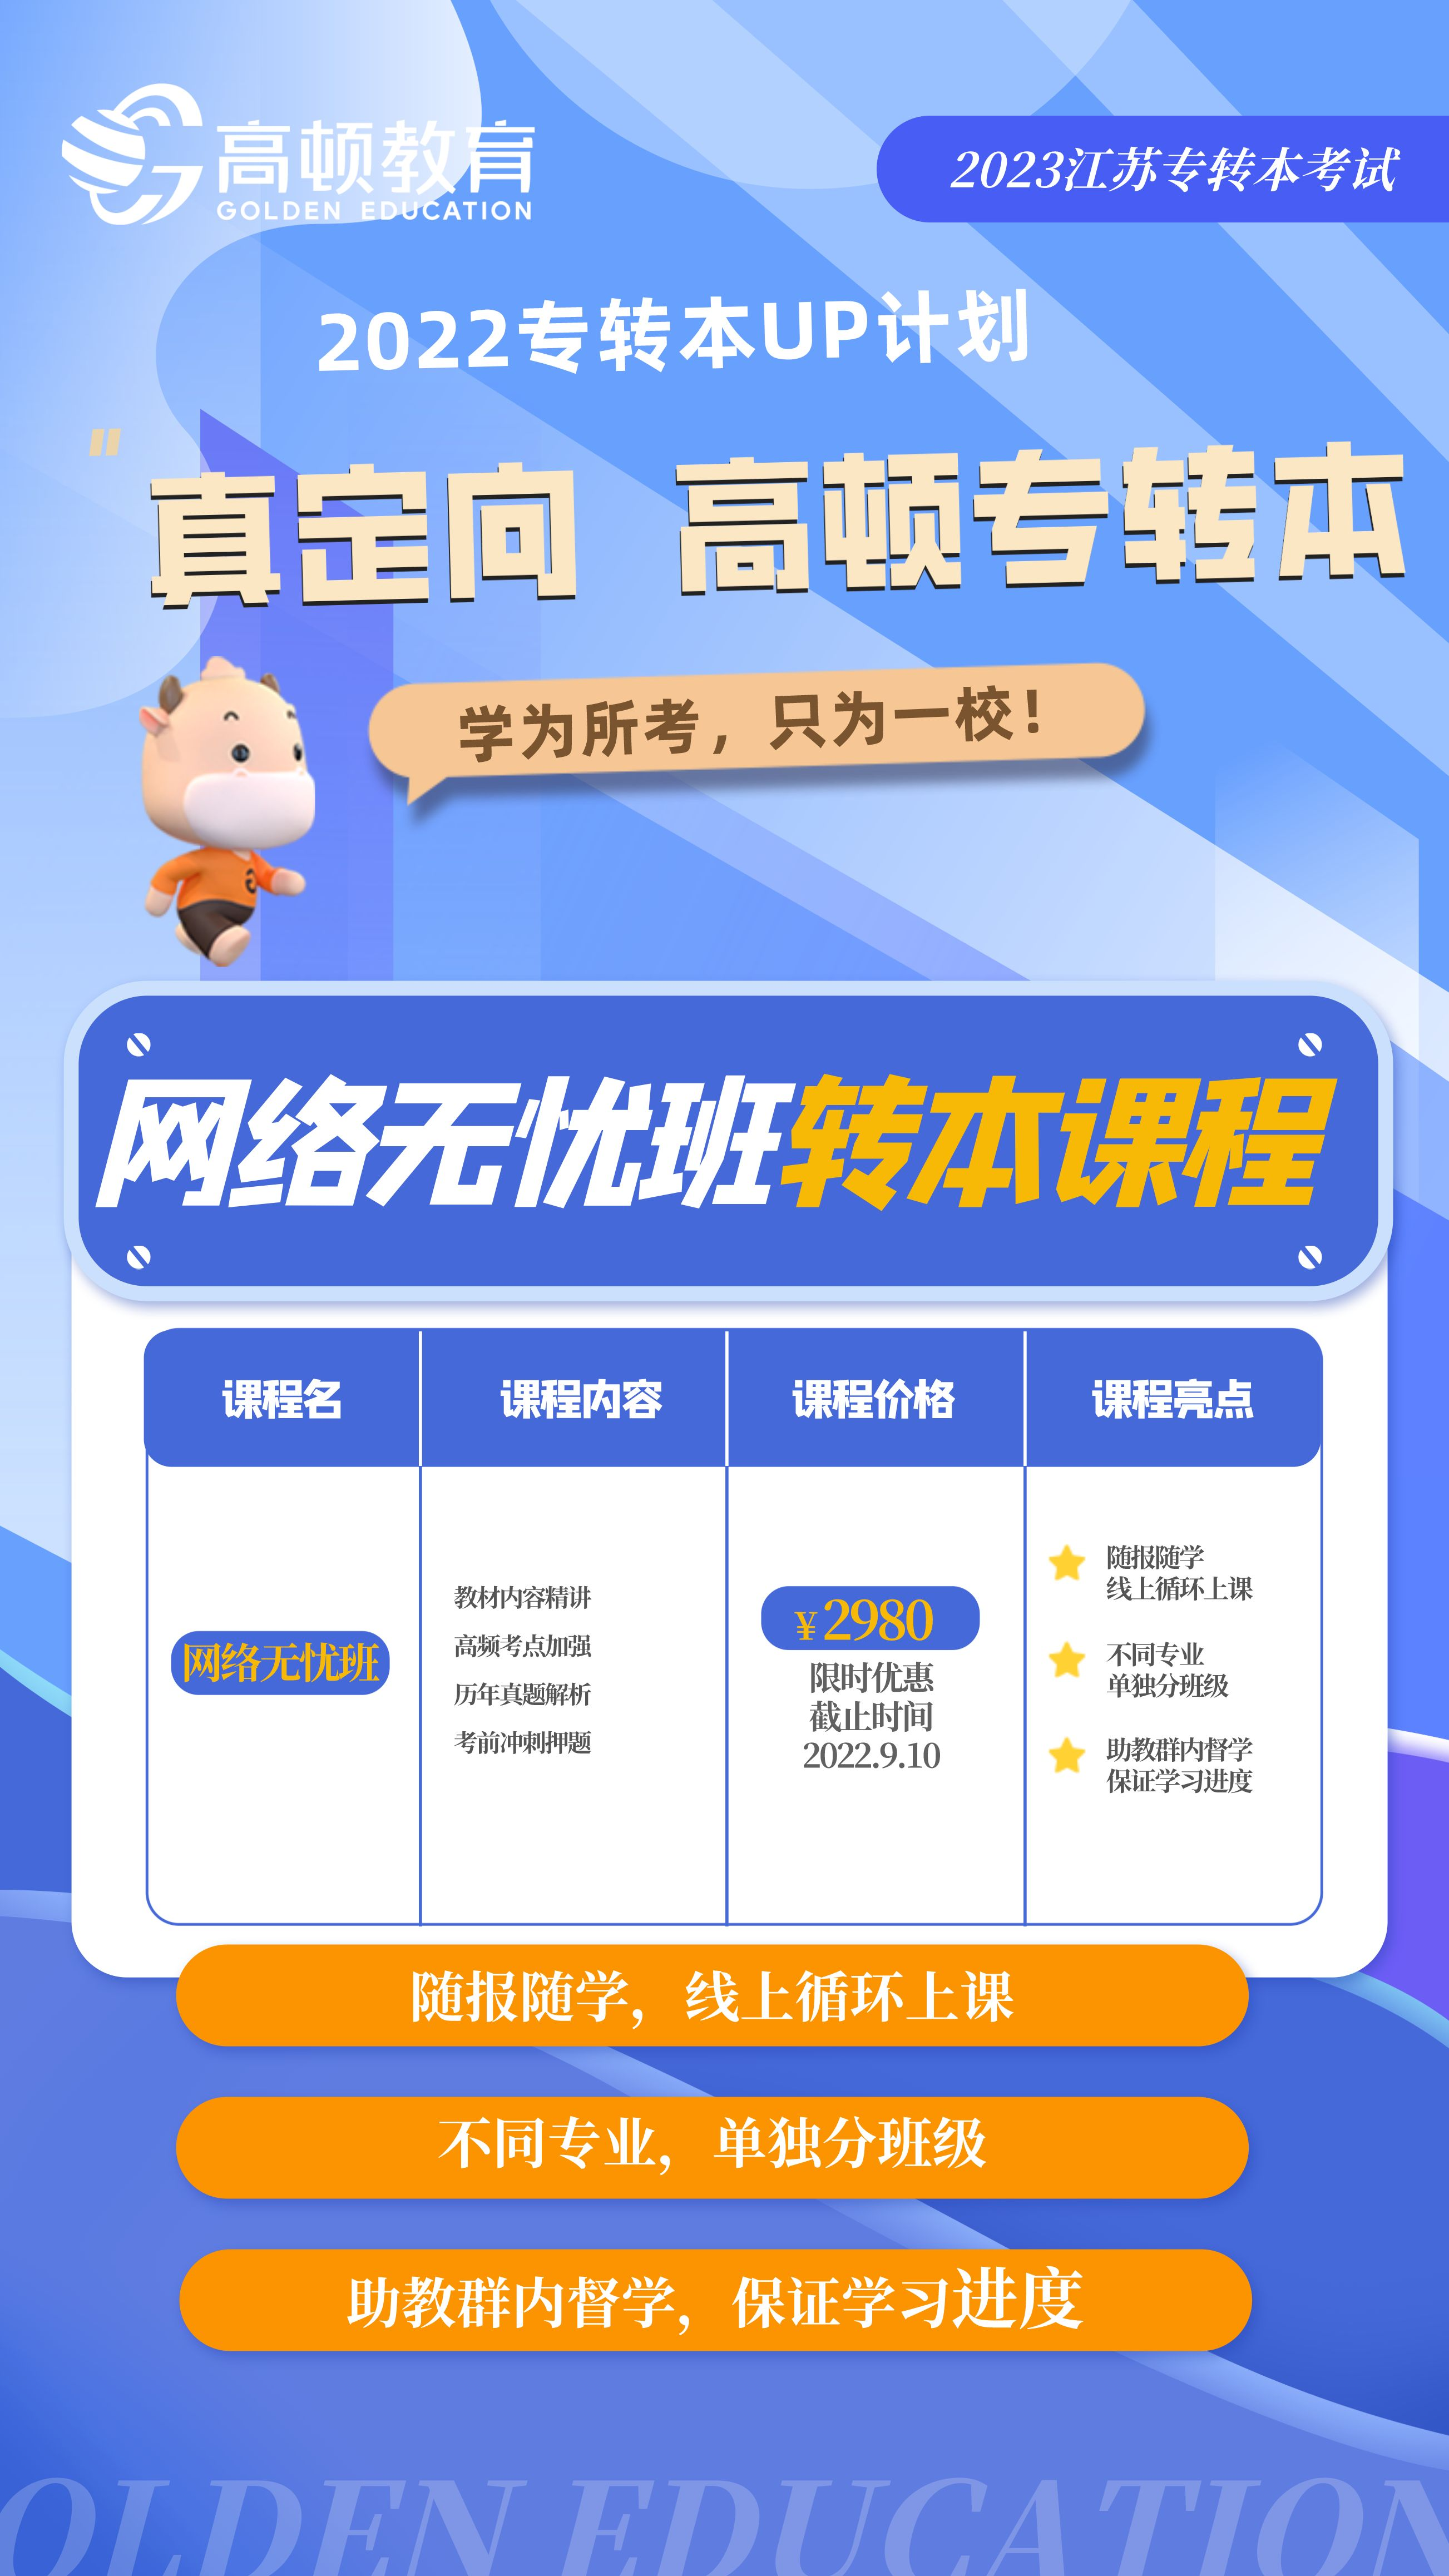 https://simg01.gaodunwangxiao.com/uploadfiles/product-center/202209/05/459b8_20220905173219.png